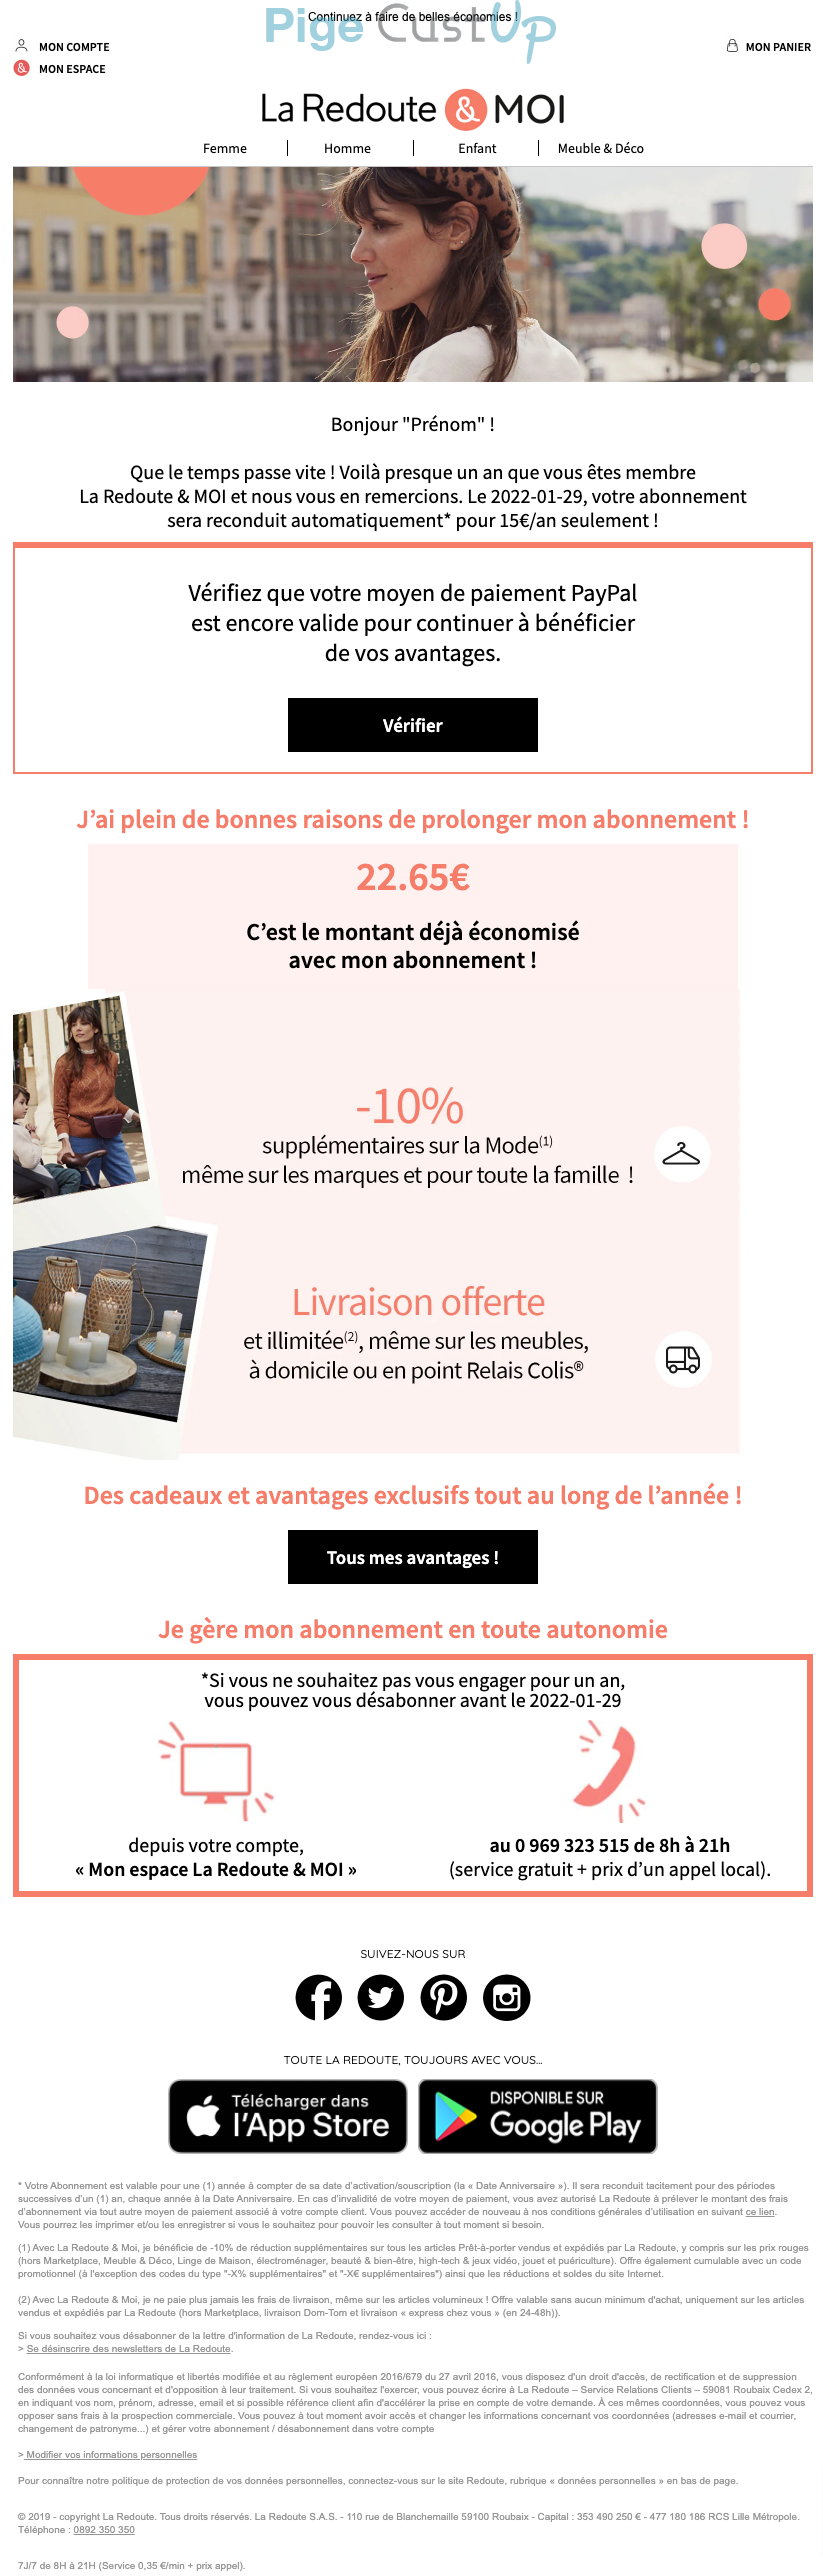 Exemple de Type de media  e-mailing - La Redoute - Marketing fidélisation - Renouvellement abonnement